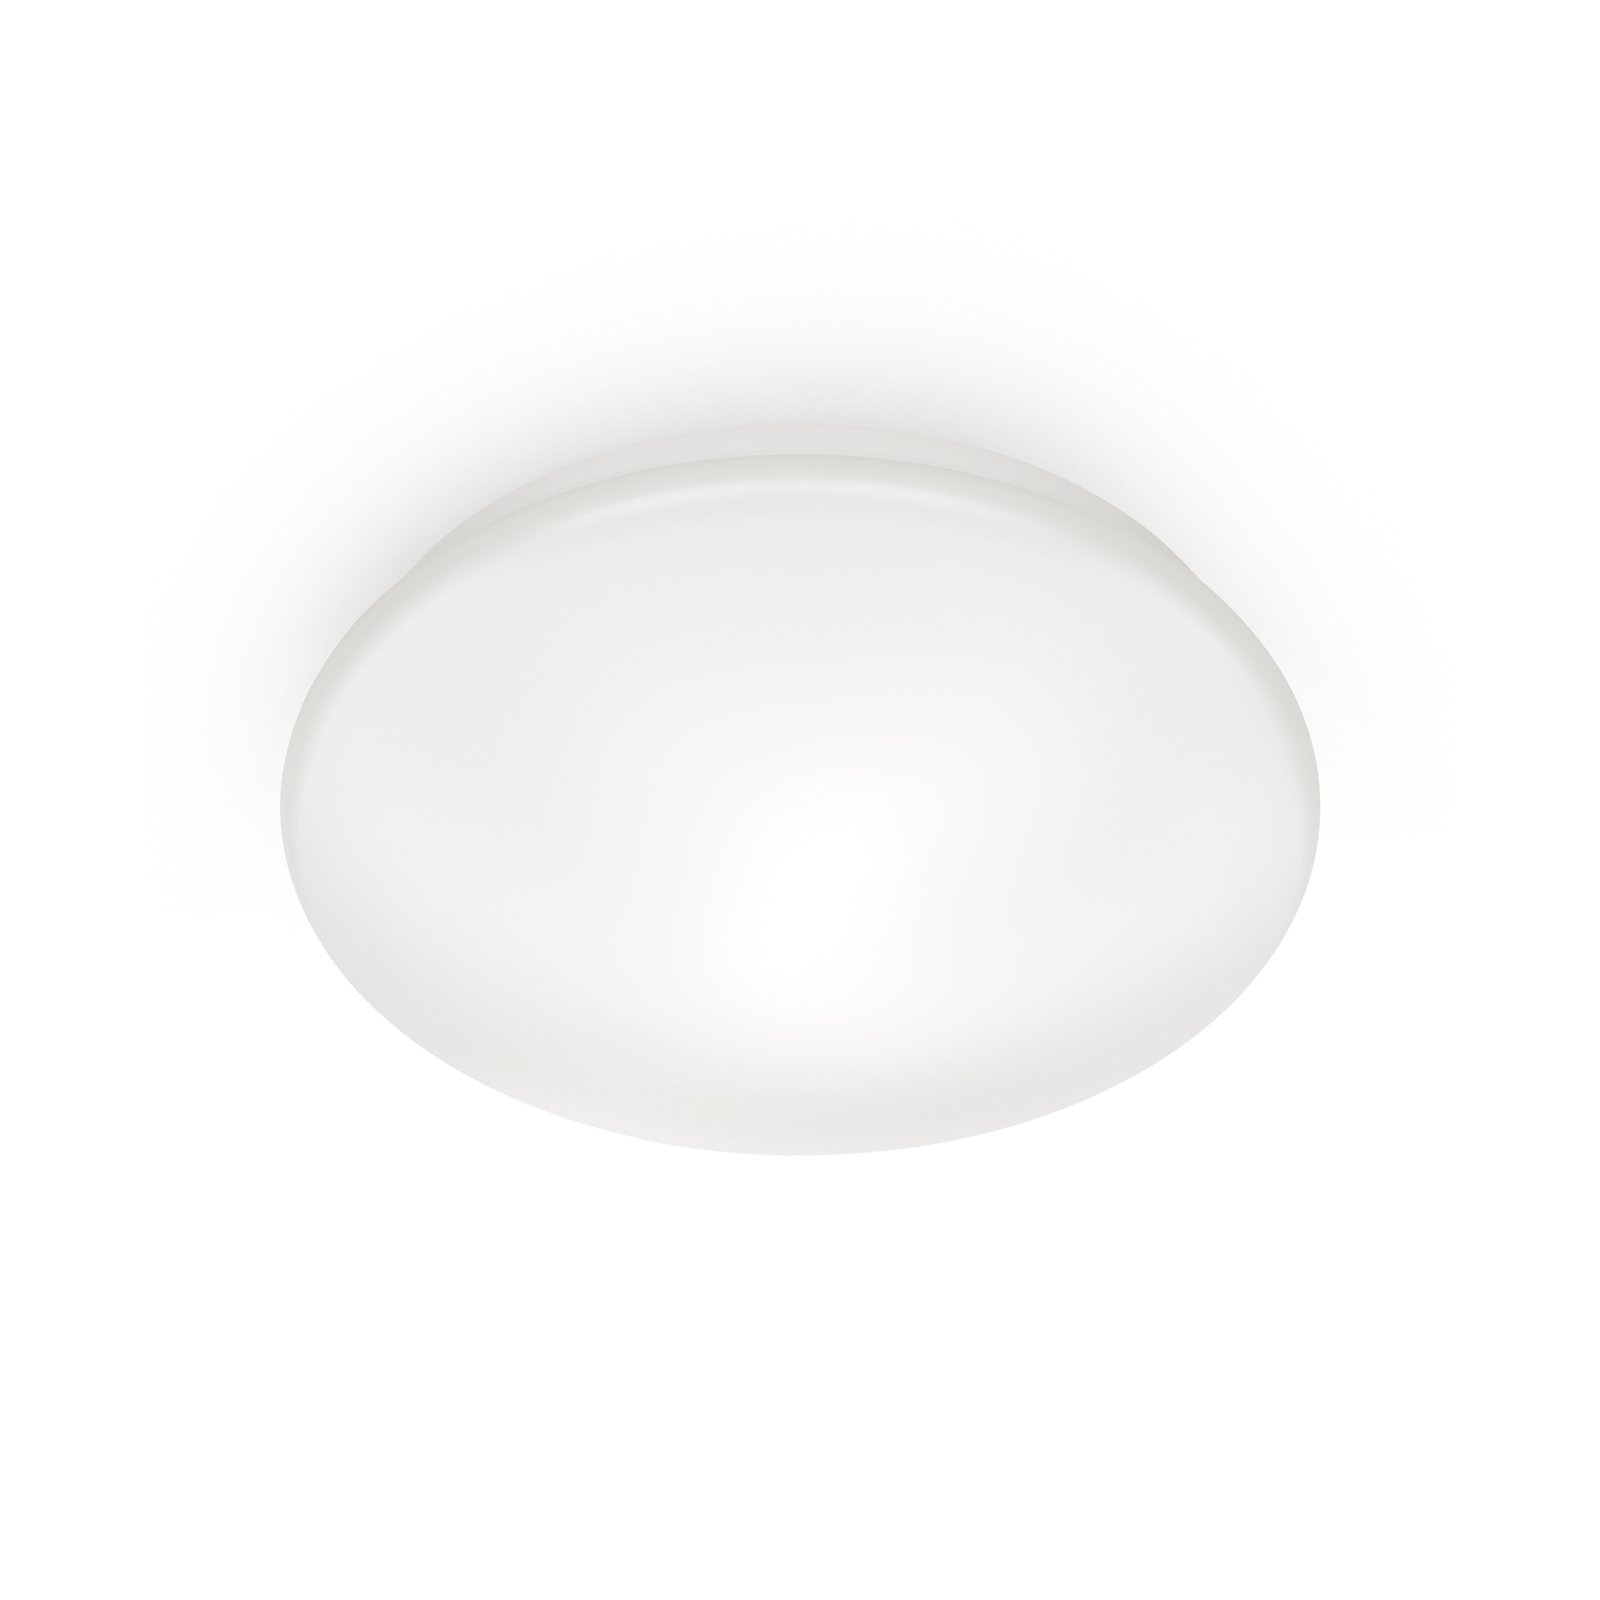 WiZ Adria LED-Deckenlampe, 17 W, warmweiß